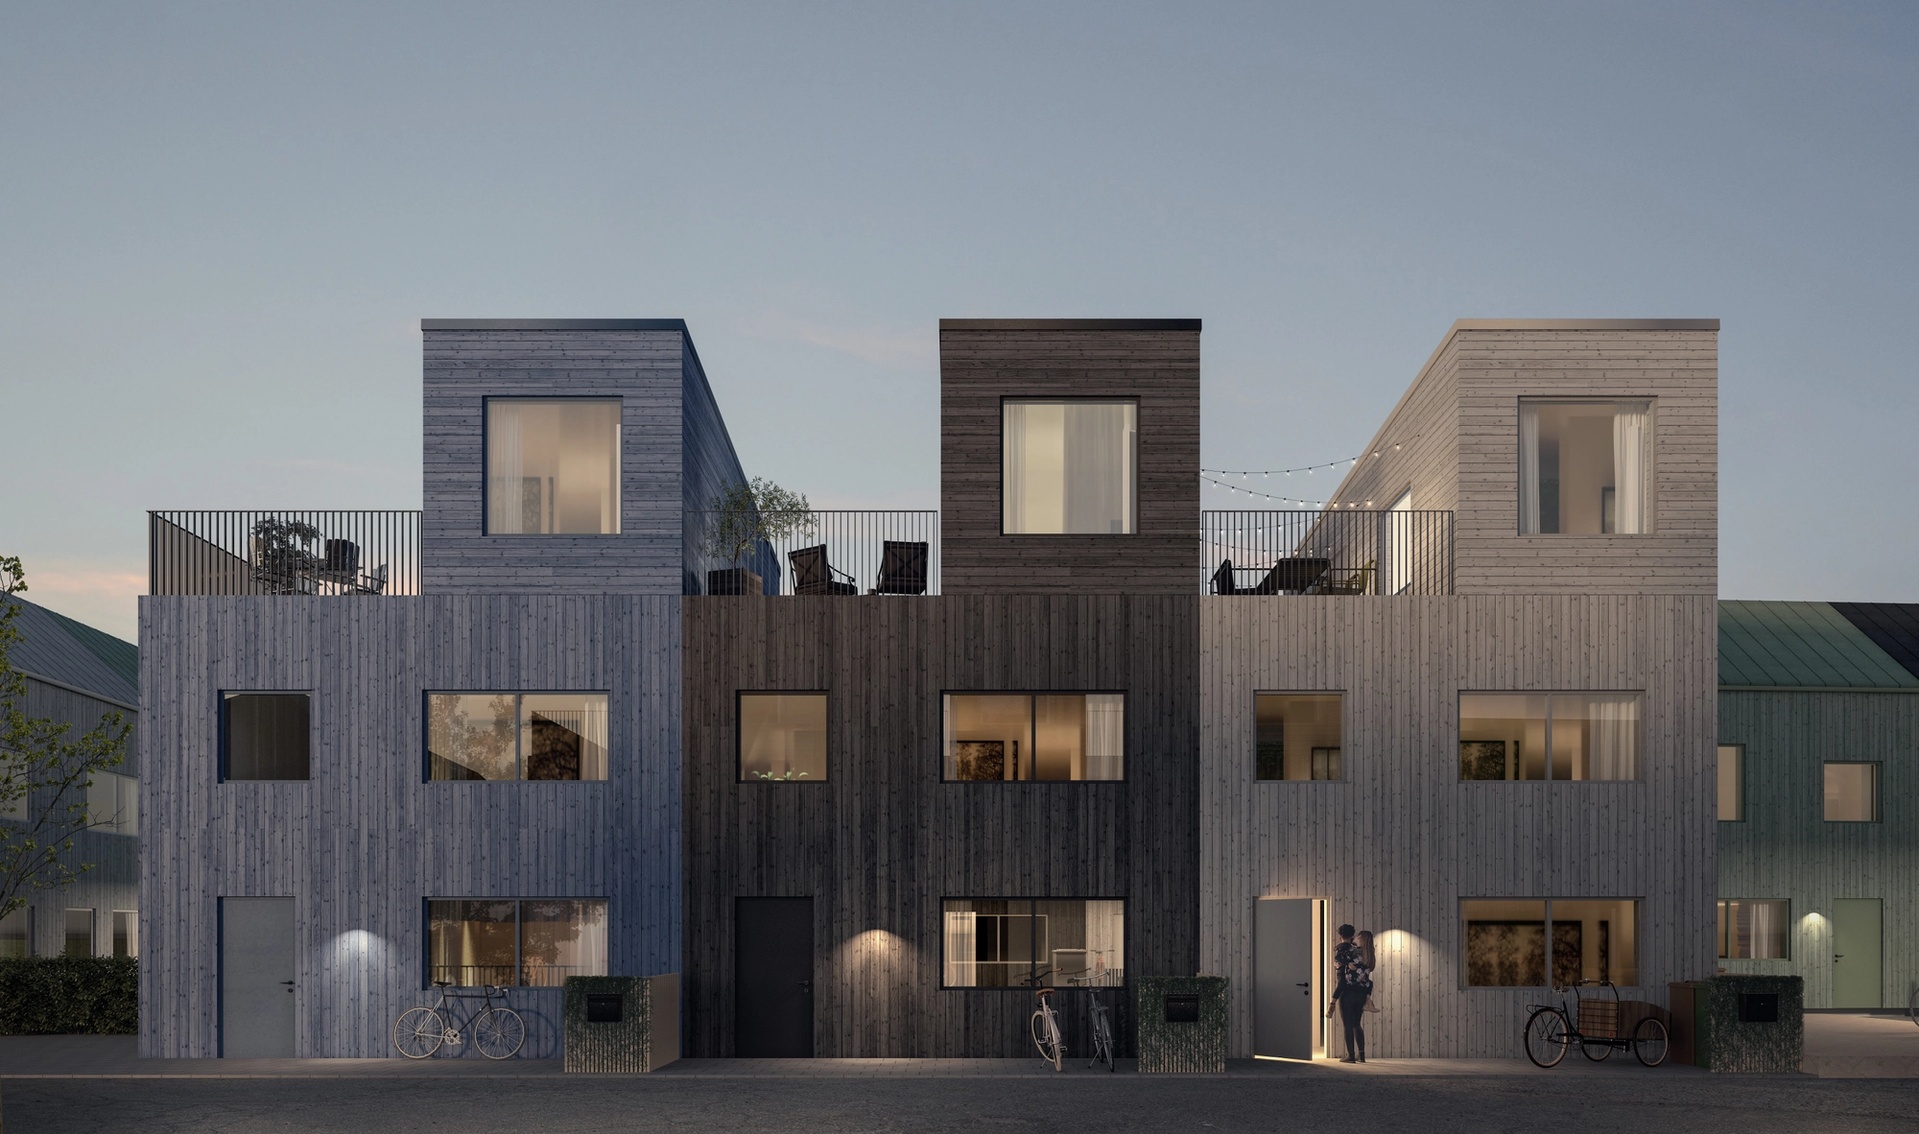 Exteriör visualisering av bostadsprojektet Fyllinge, Halmstad ritat av Arkitekterna Krook & Tjäder